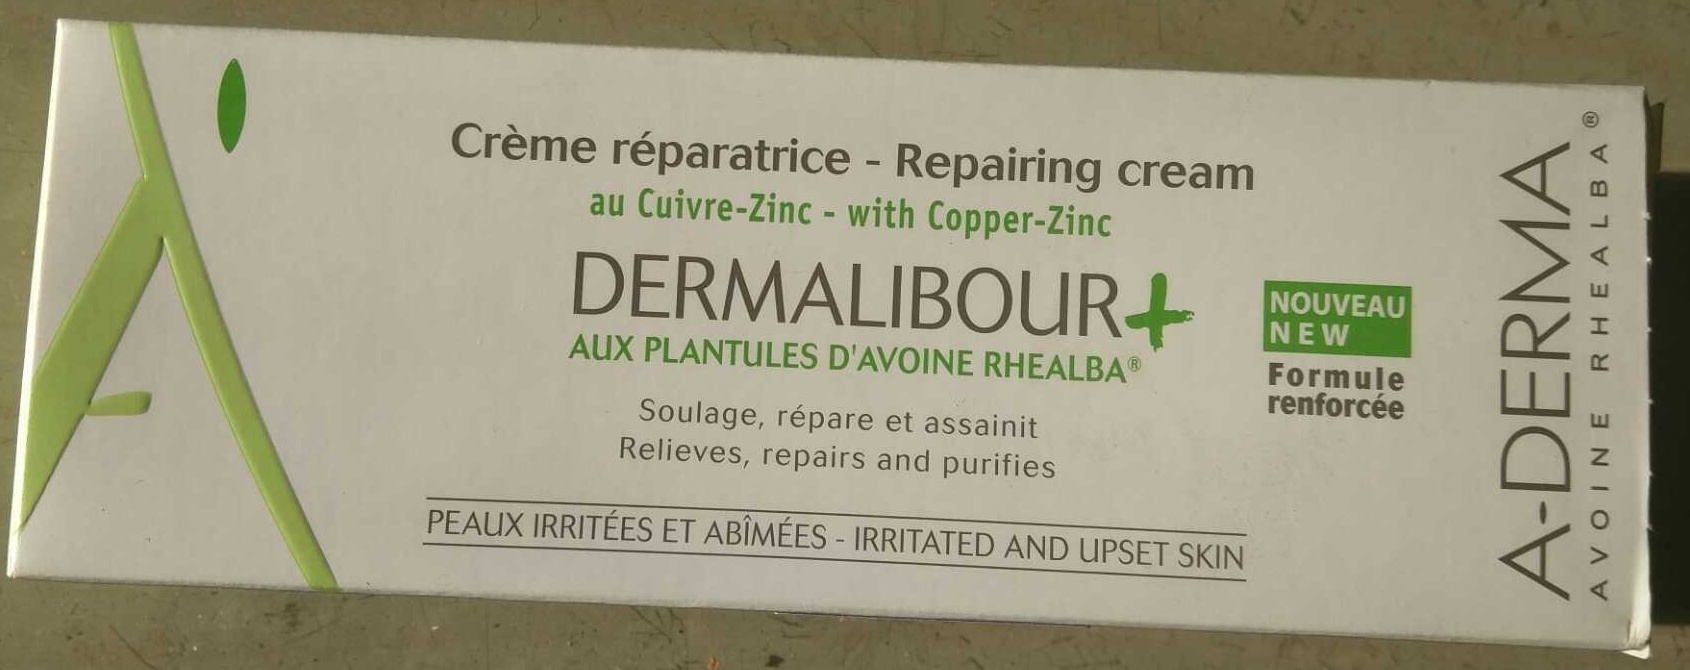 Crème réparatrice Dermalibour+ - מוצר - fr